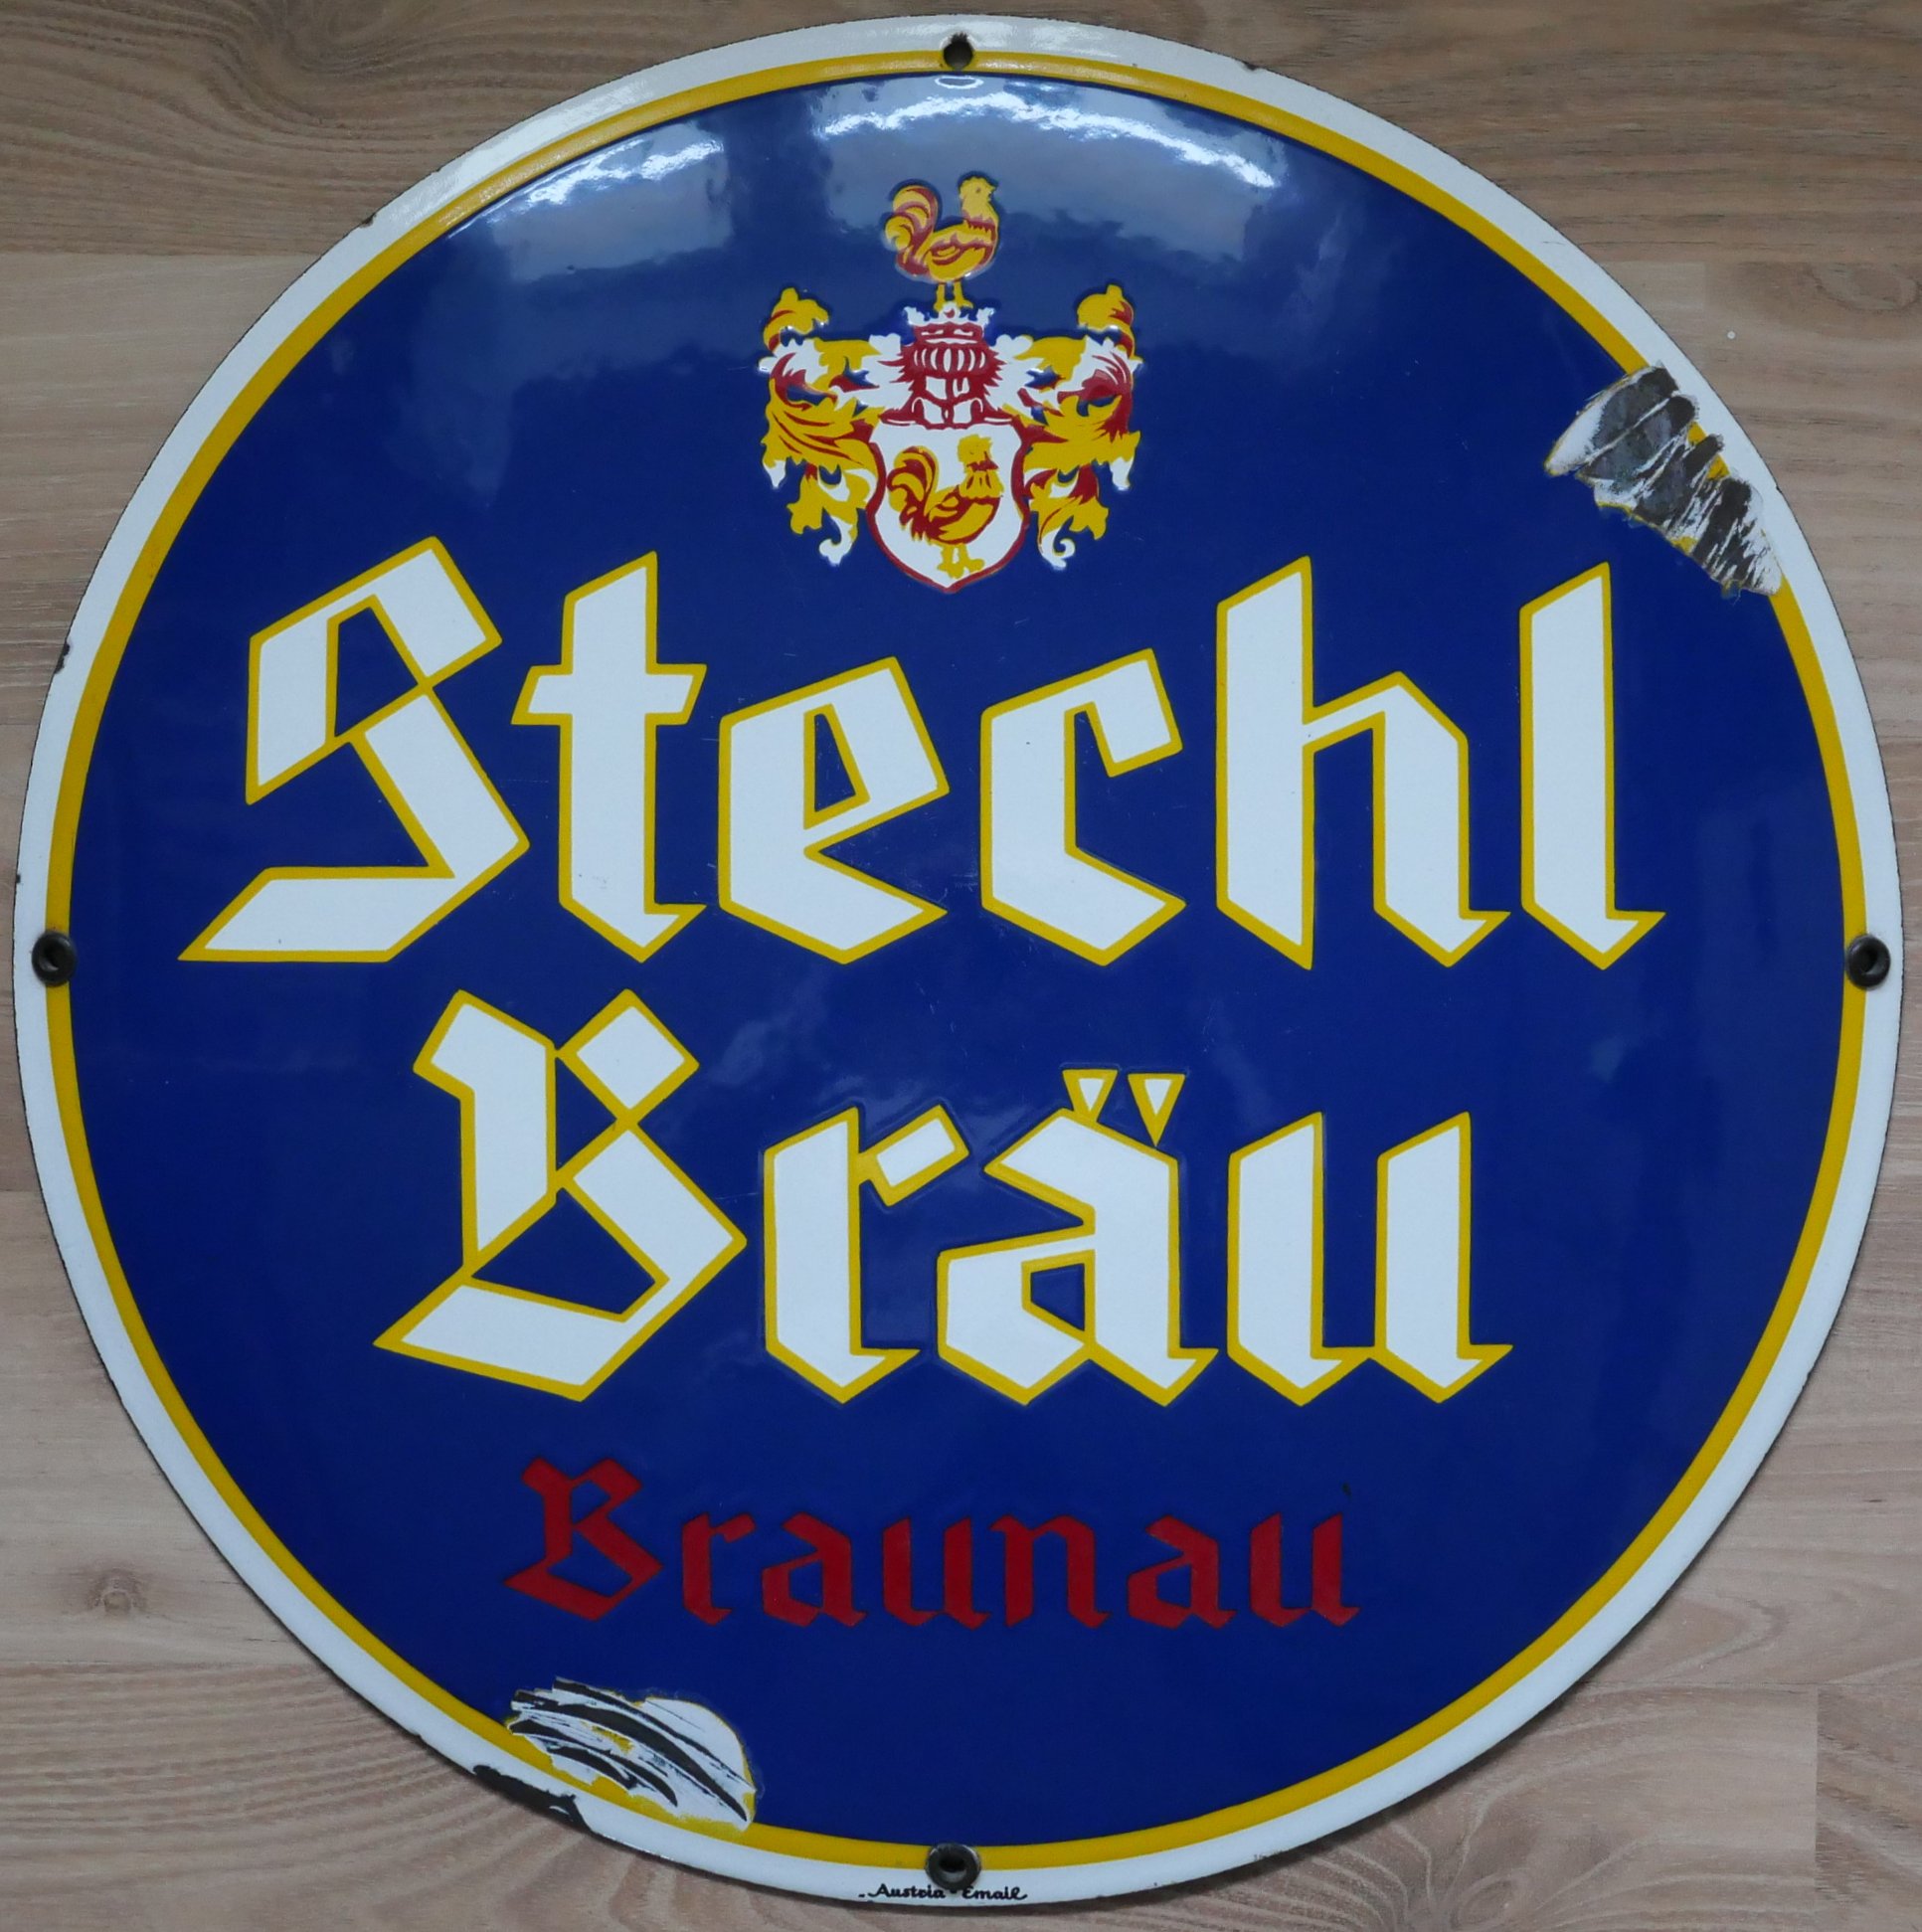 Stechl-Bräu